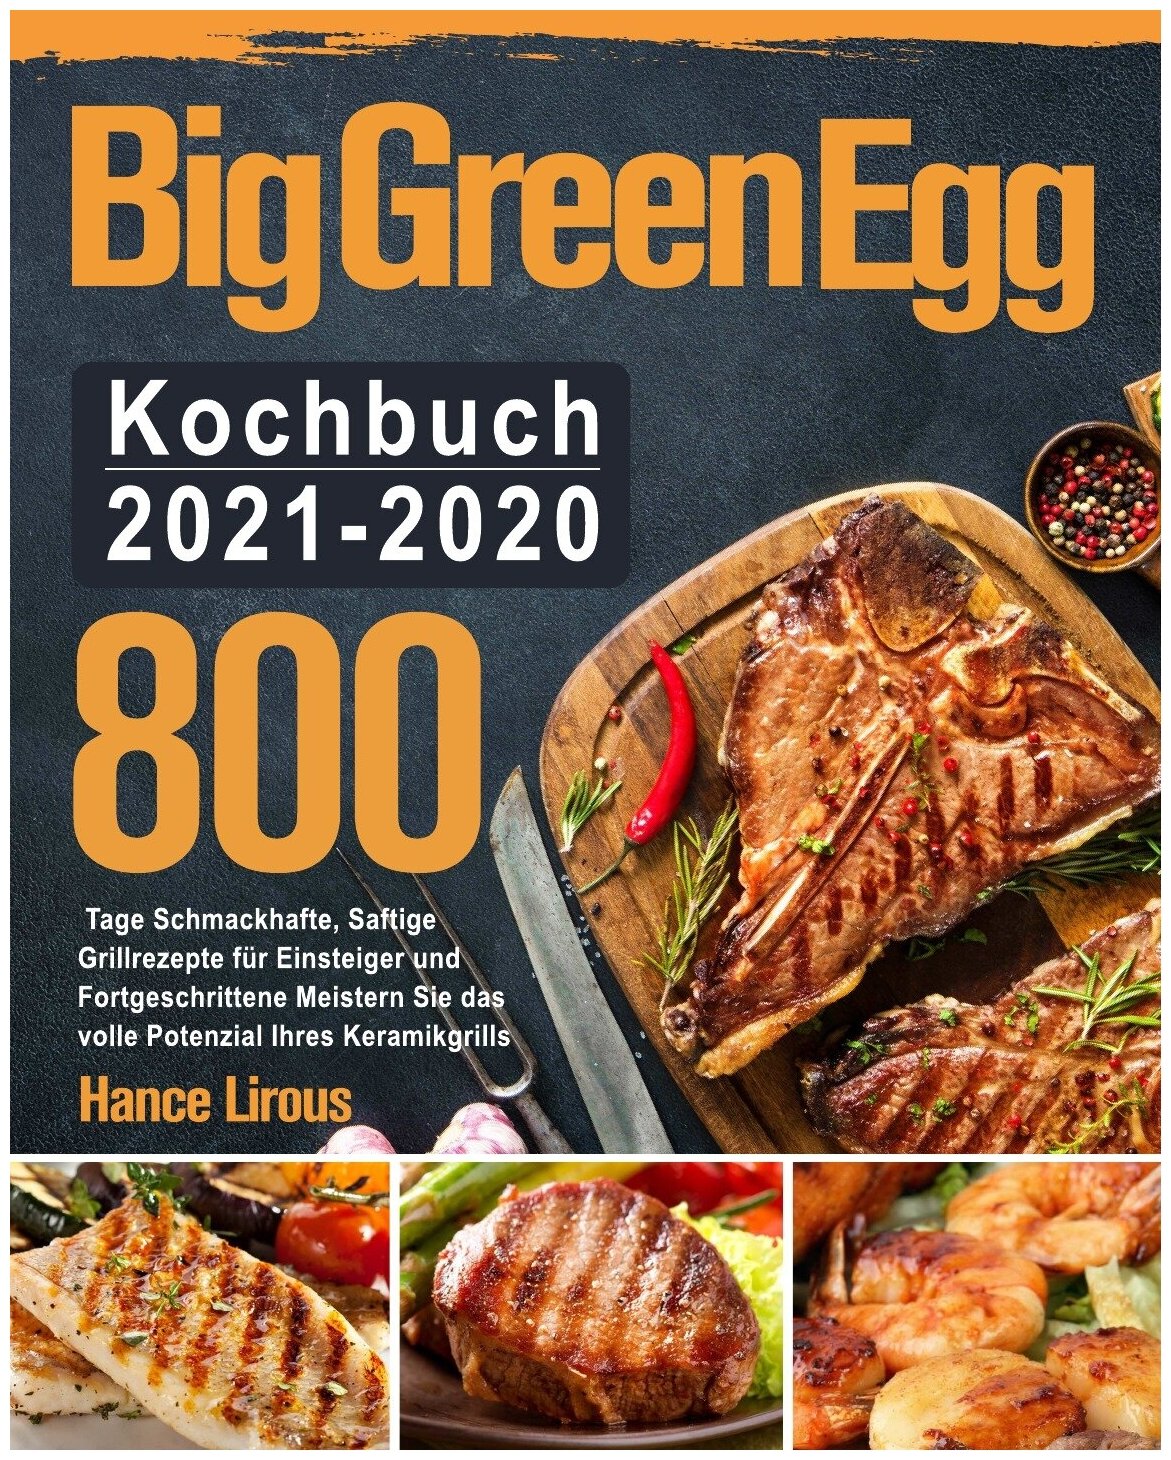 Big Green Egg Kochbuch 2021-2020. Кулинарная книга к грилю Большое зеленое яйцо 2021-2020: на немецком языке